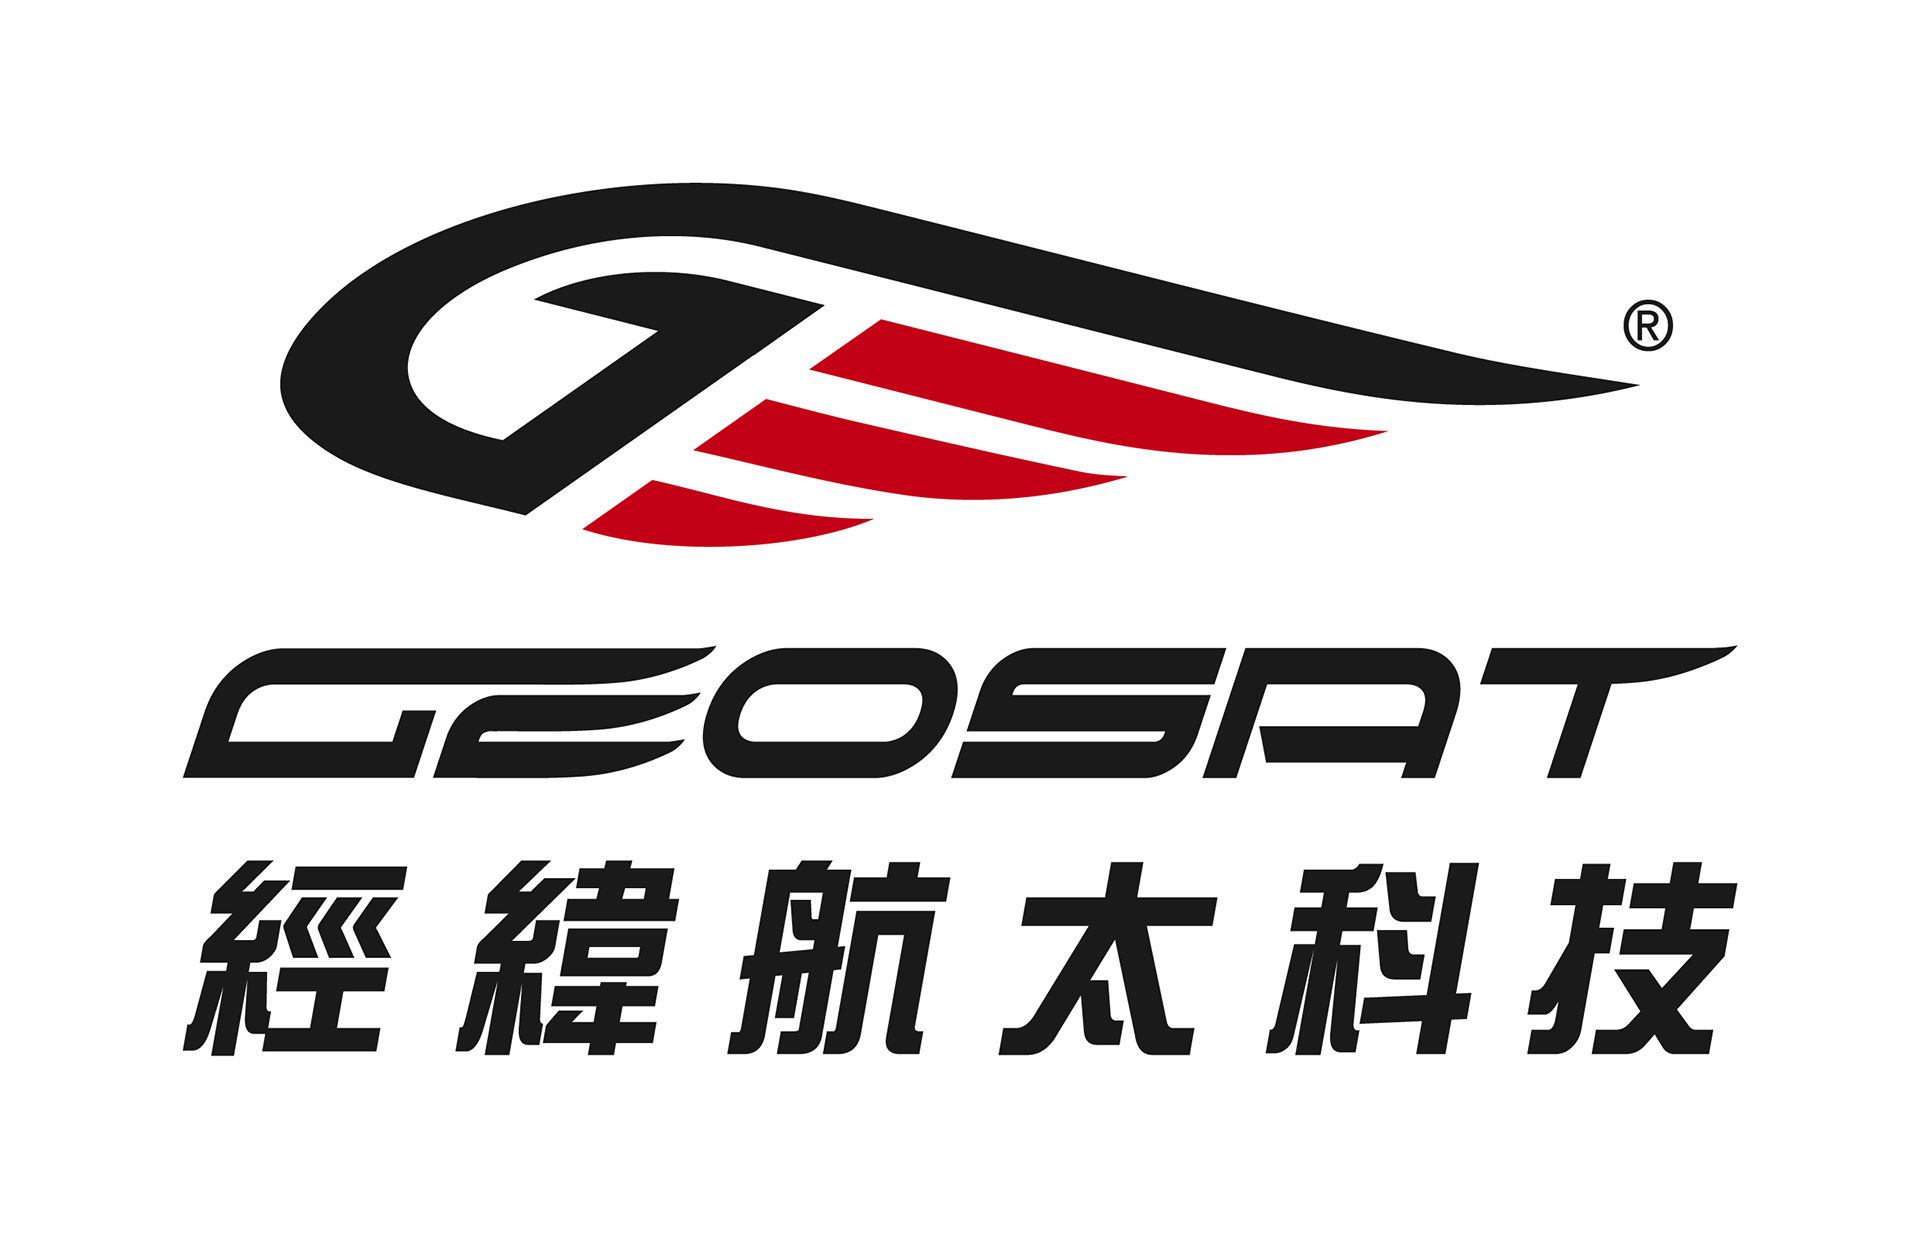 經緯航太科技股份有限公司-Logo